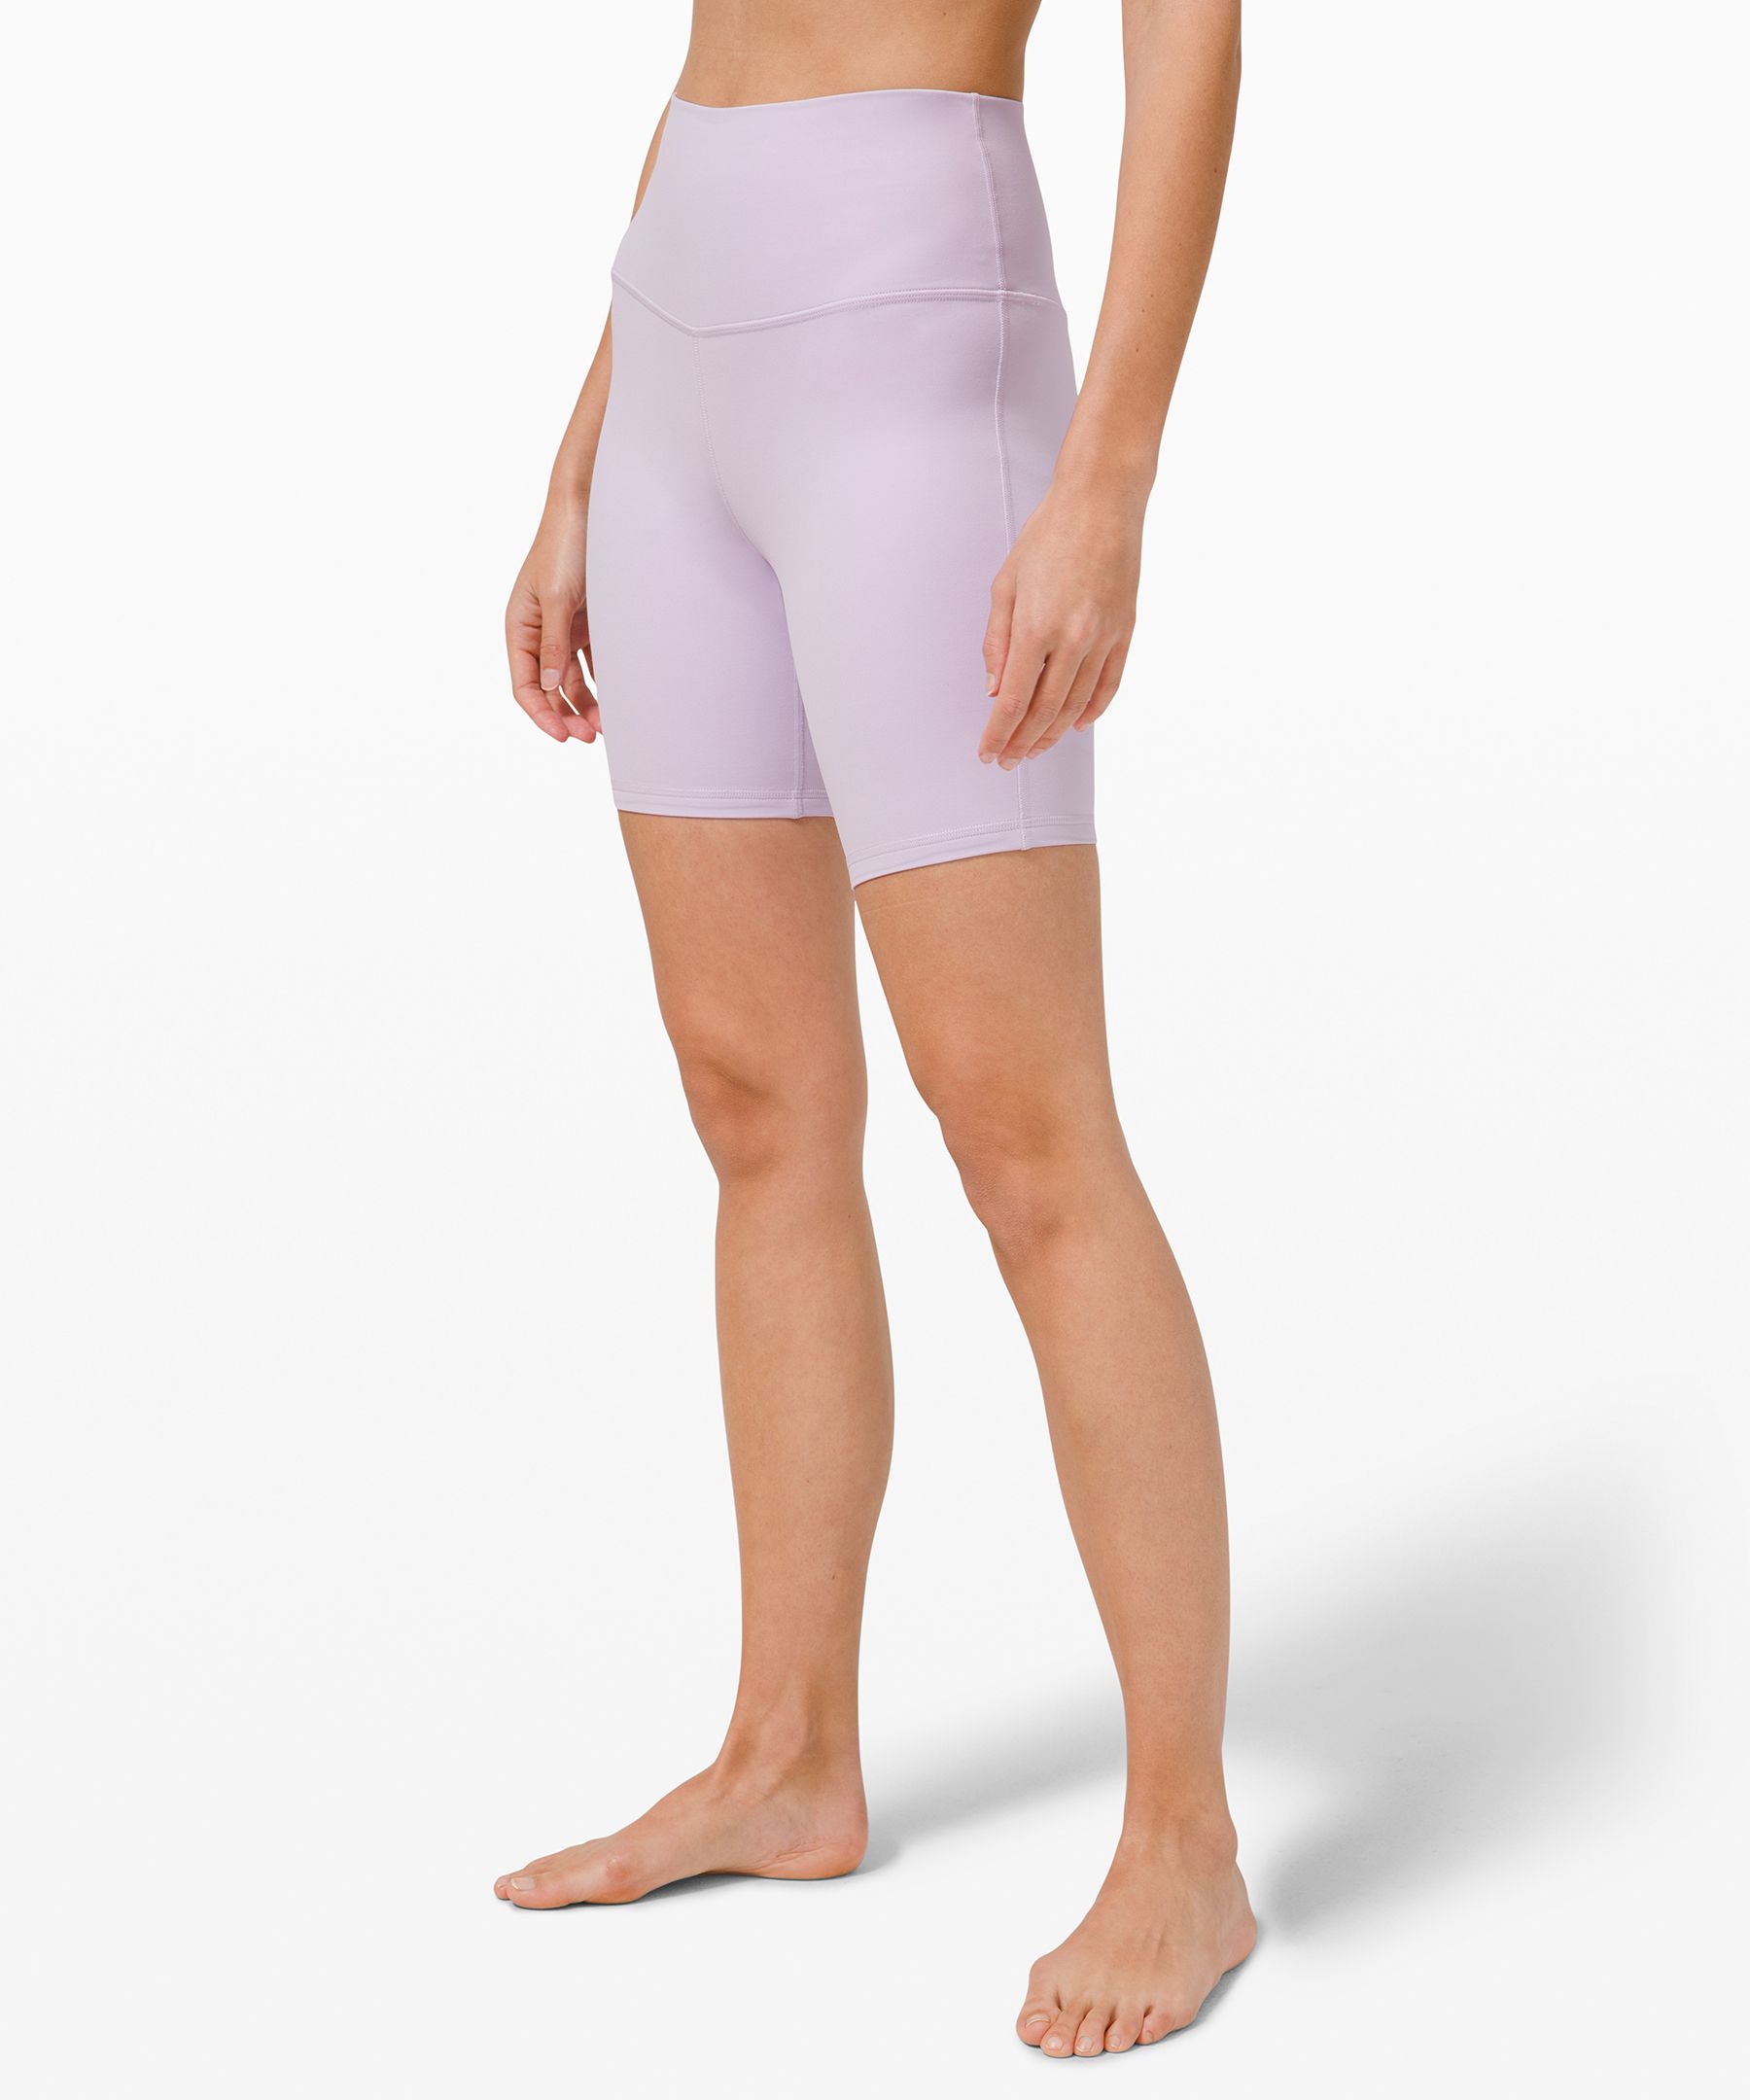 align shorts lululemon